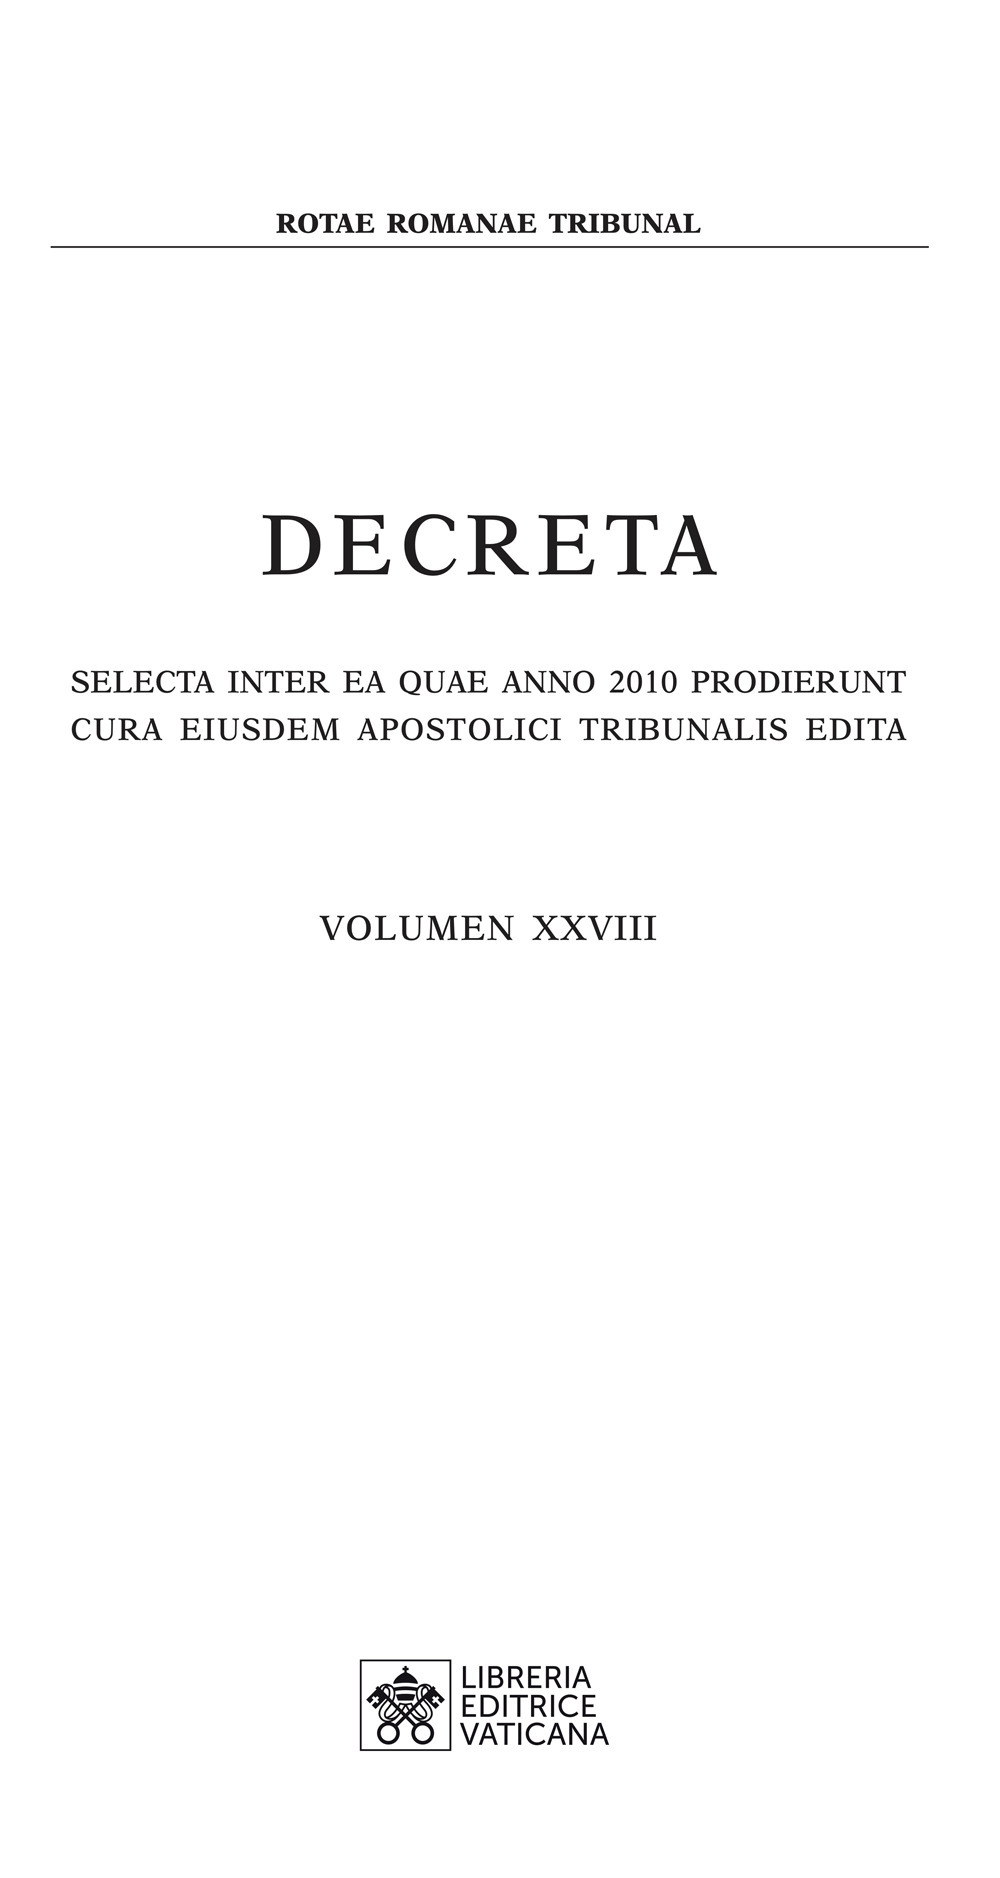 Decreta. Selecta inter ea quae anno 2010 prodierunt cura eiusdem apostolici tribunali edita (2010). Vol. 28